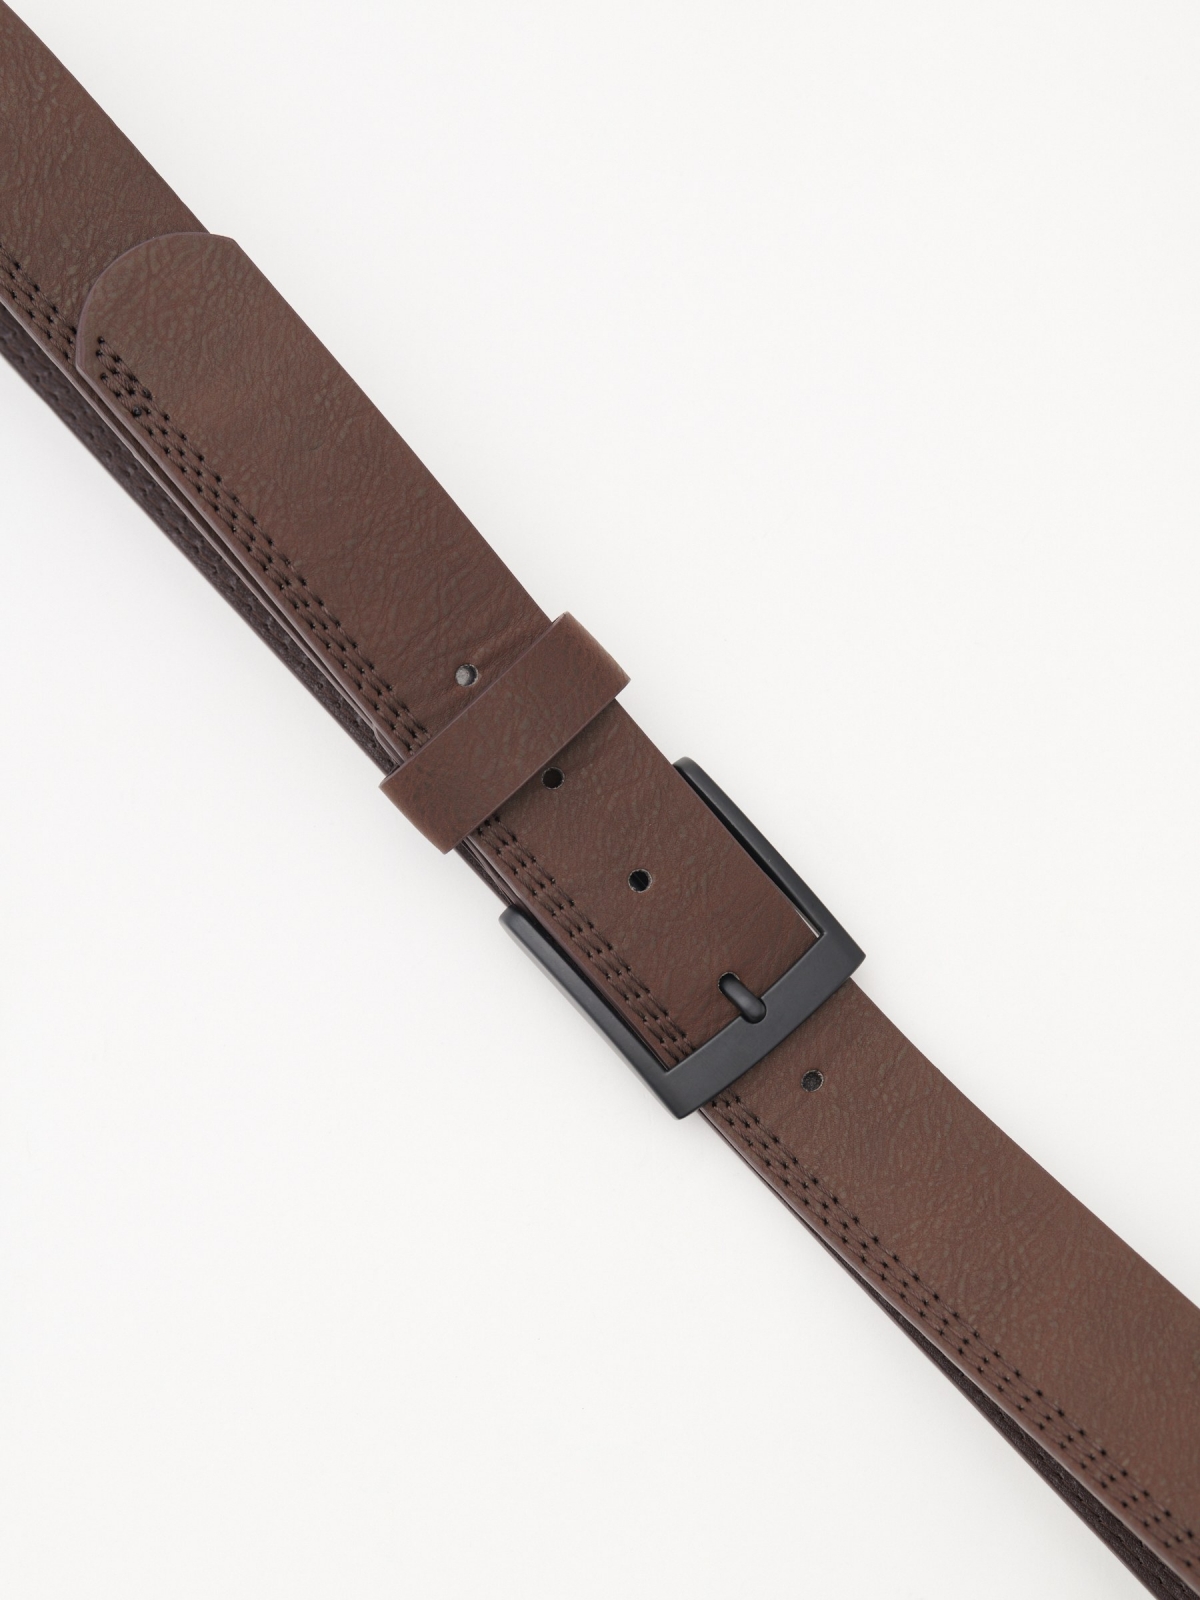 Stitching leather effect belt brown vista detalle